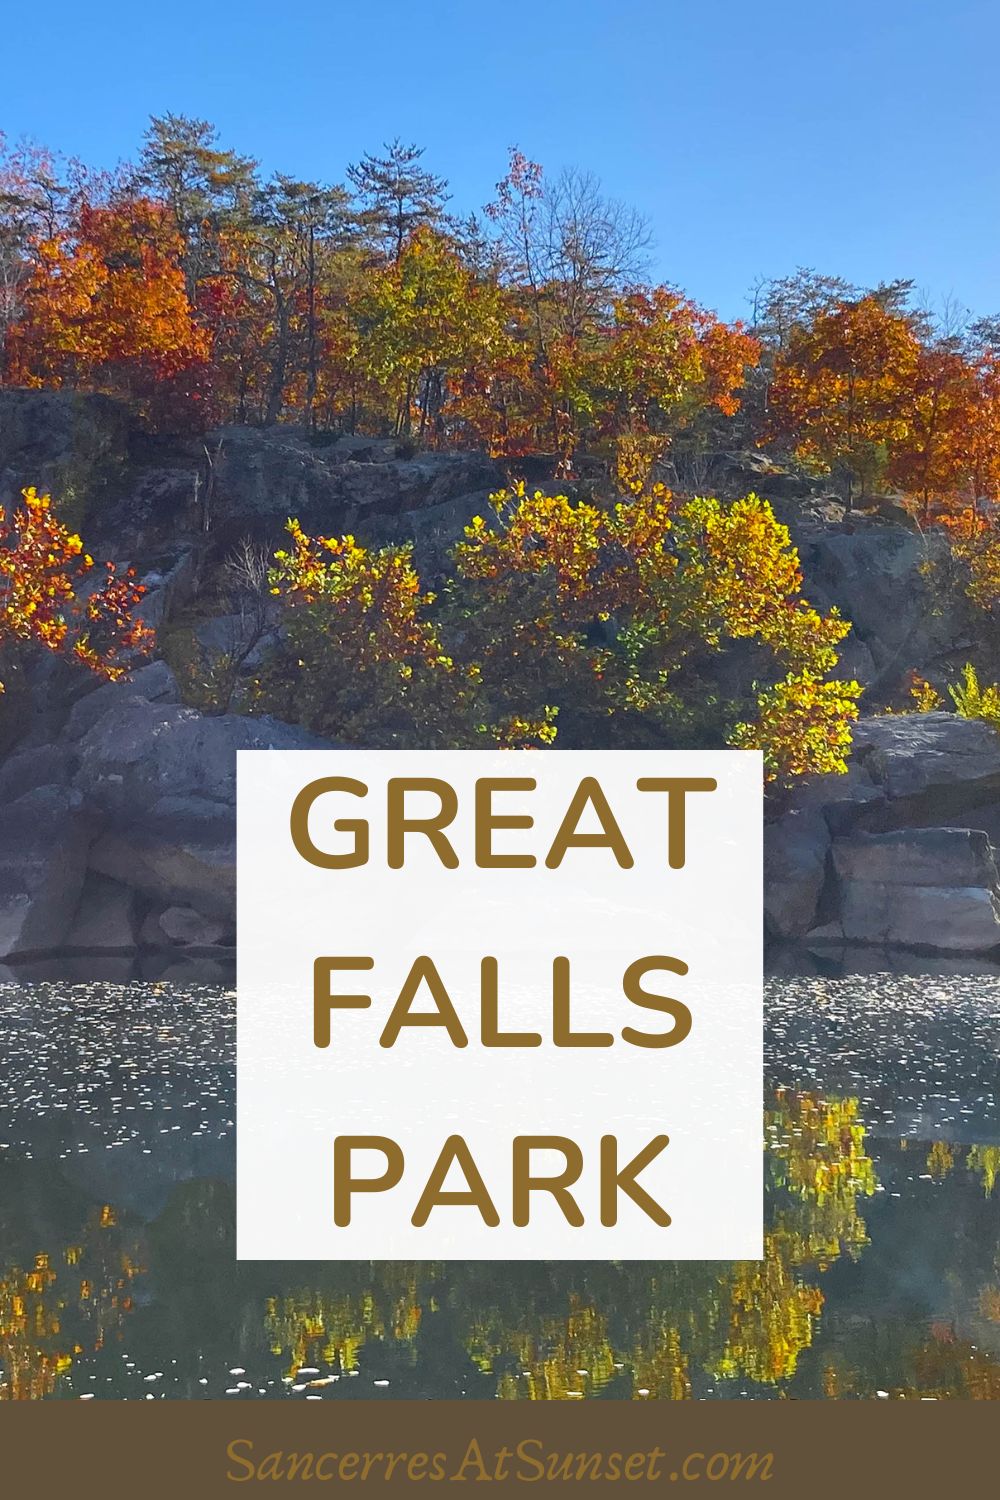 Great Falls Park in Virginia